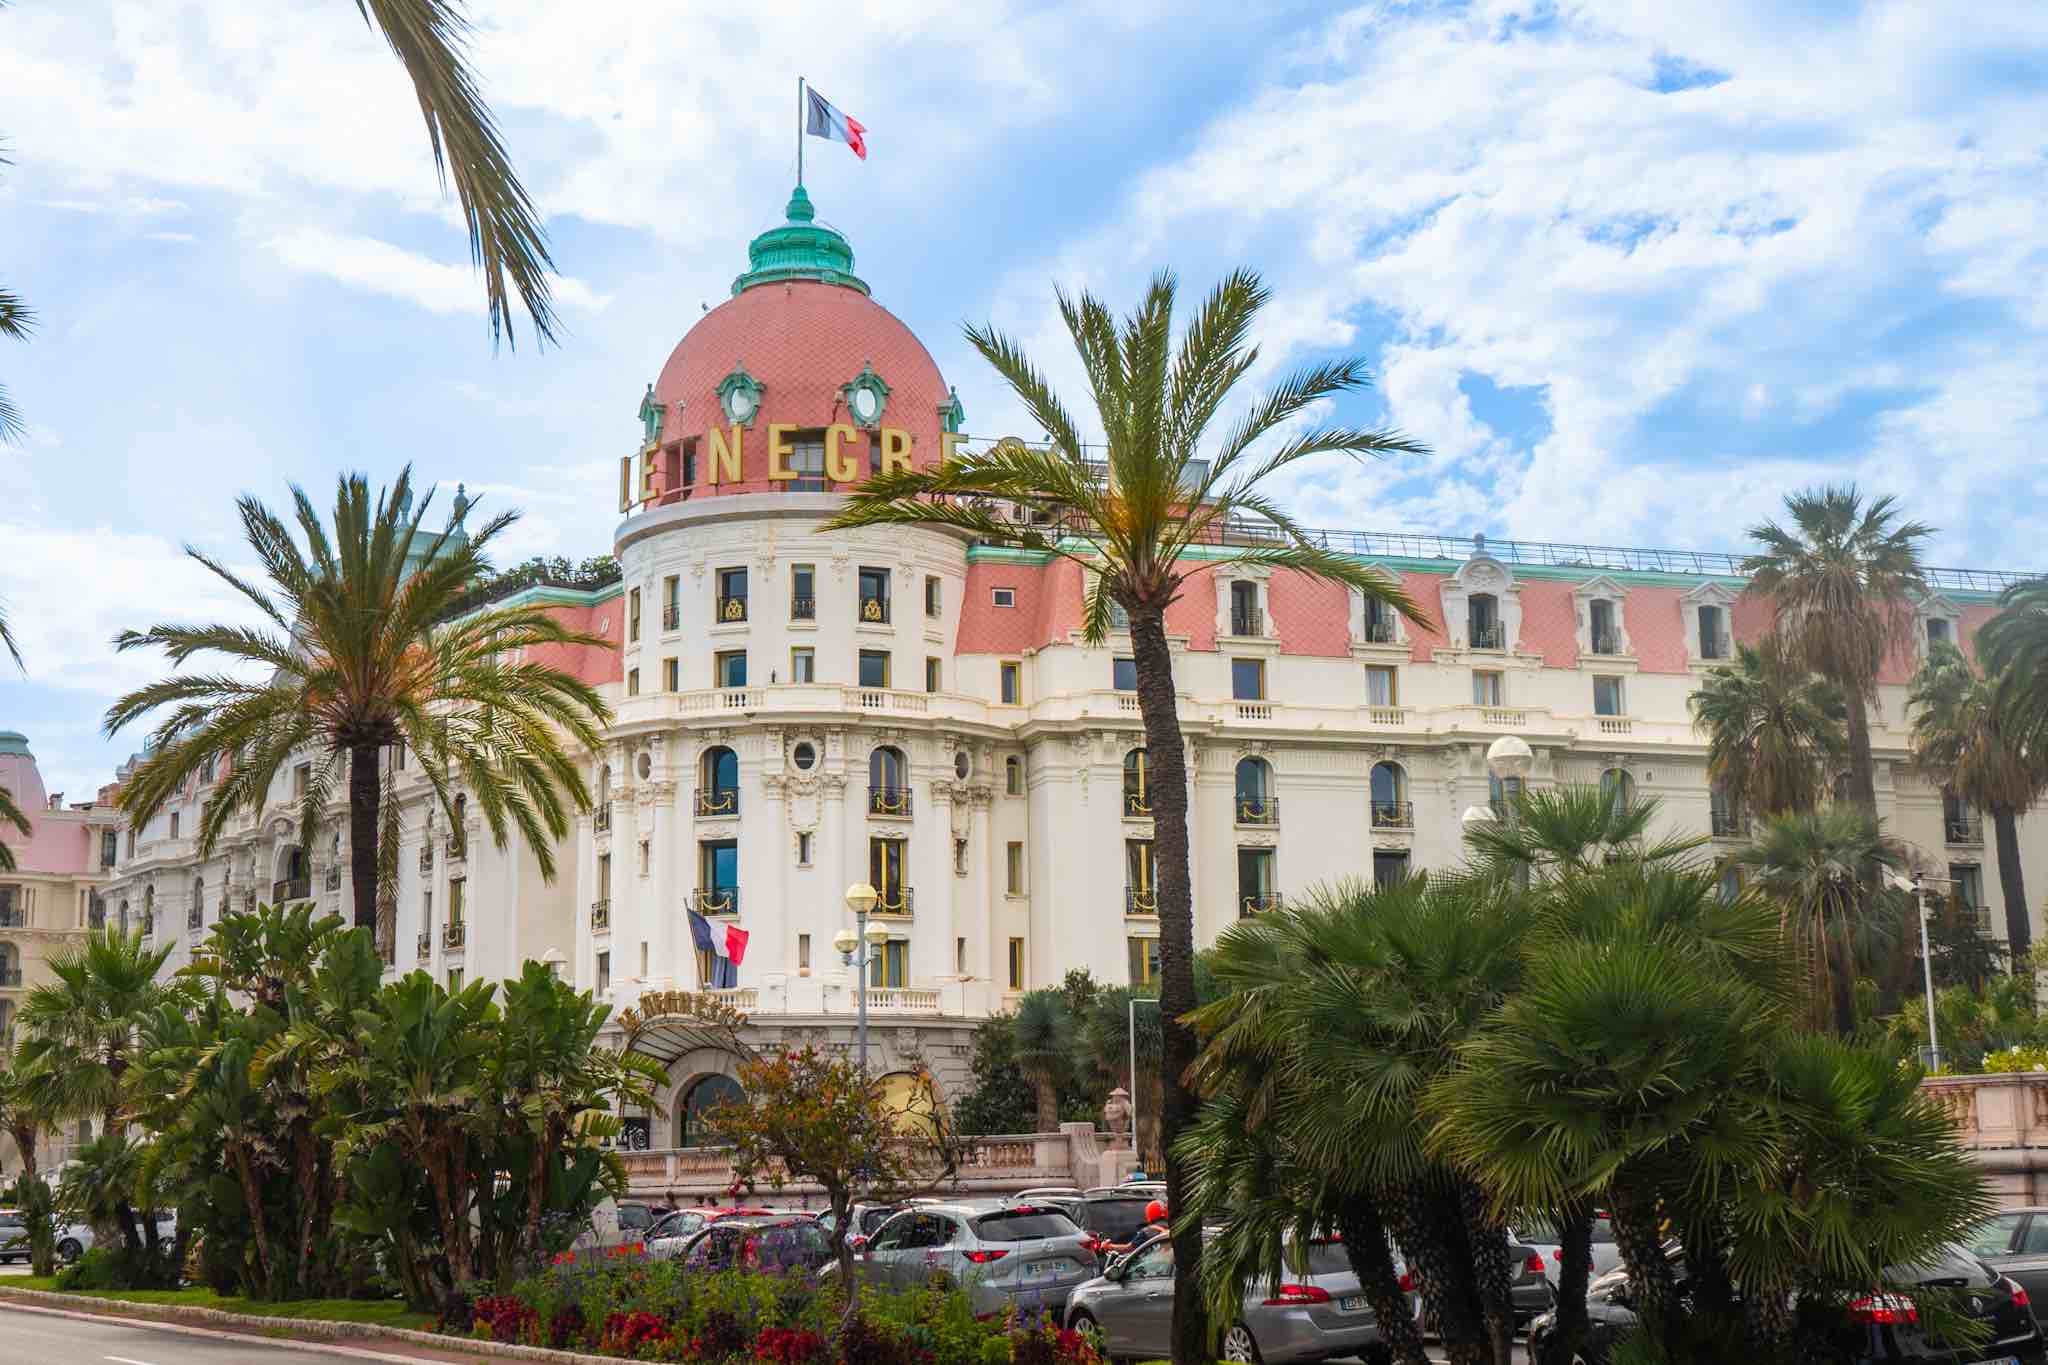 Le Negresco Hotel in Nice